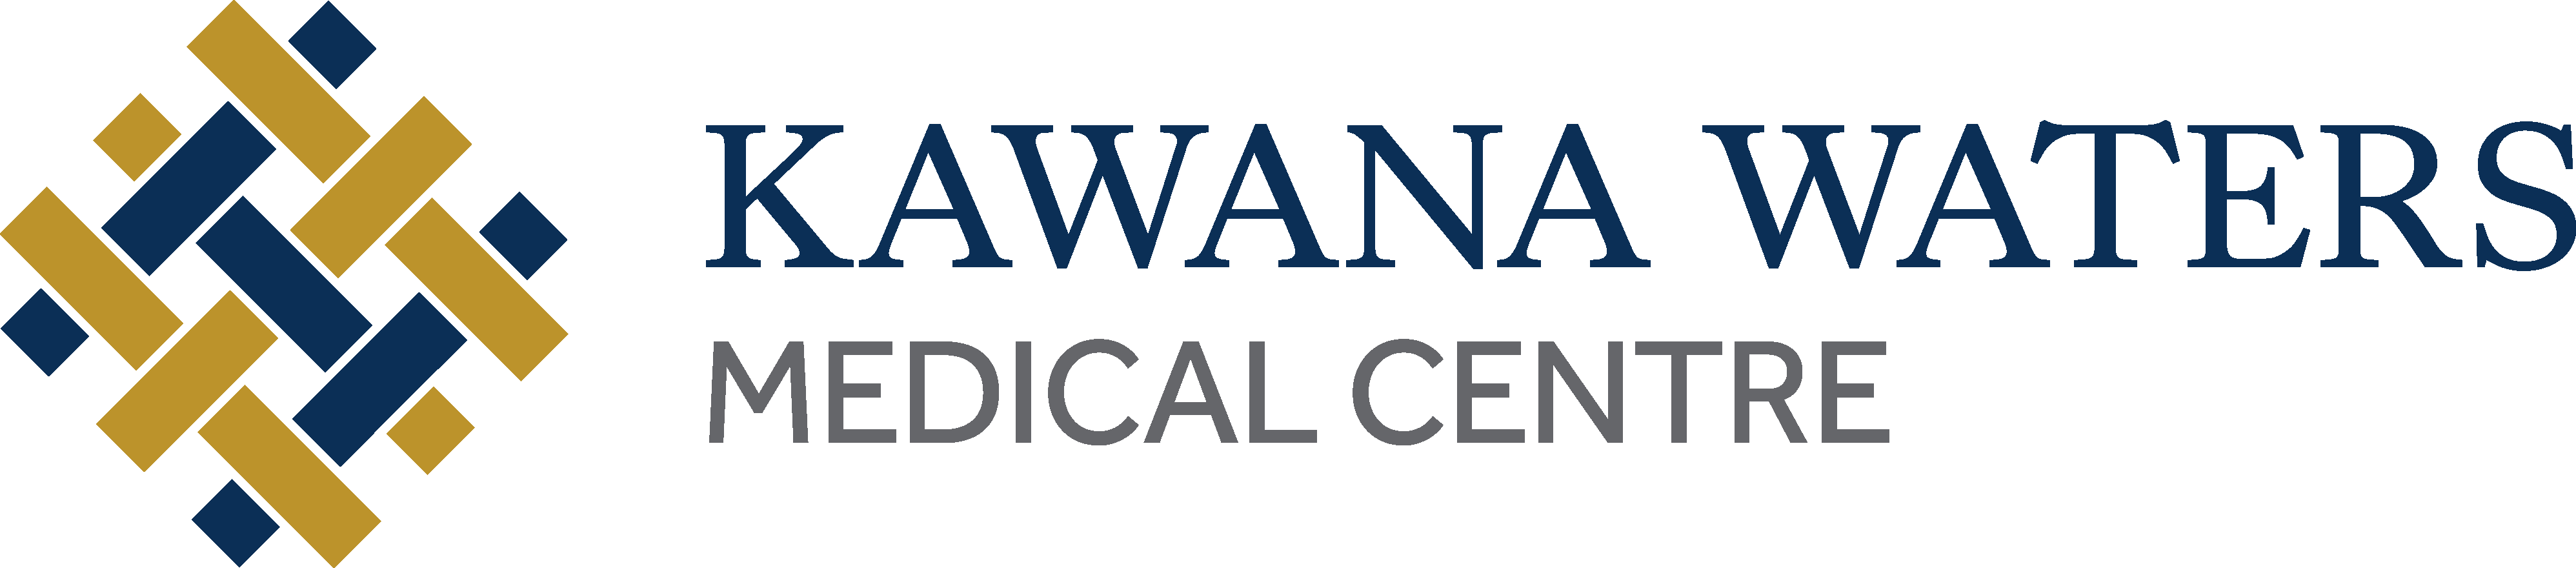 Kawana Waters Medical Centre